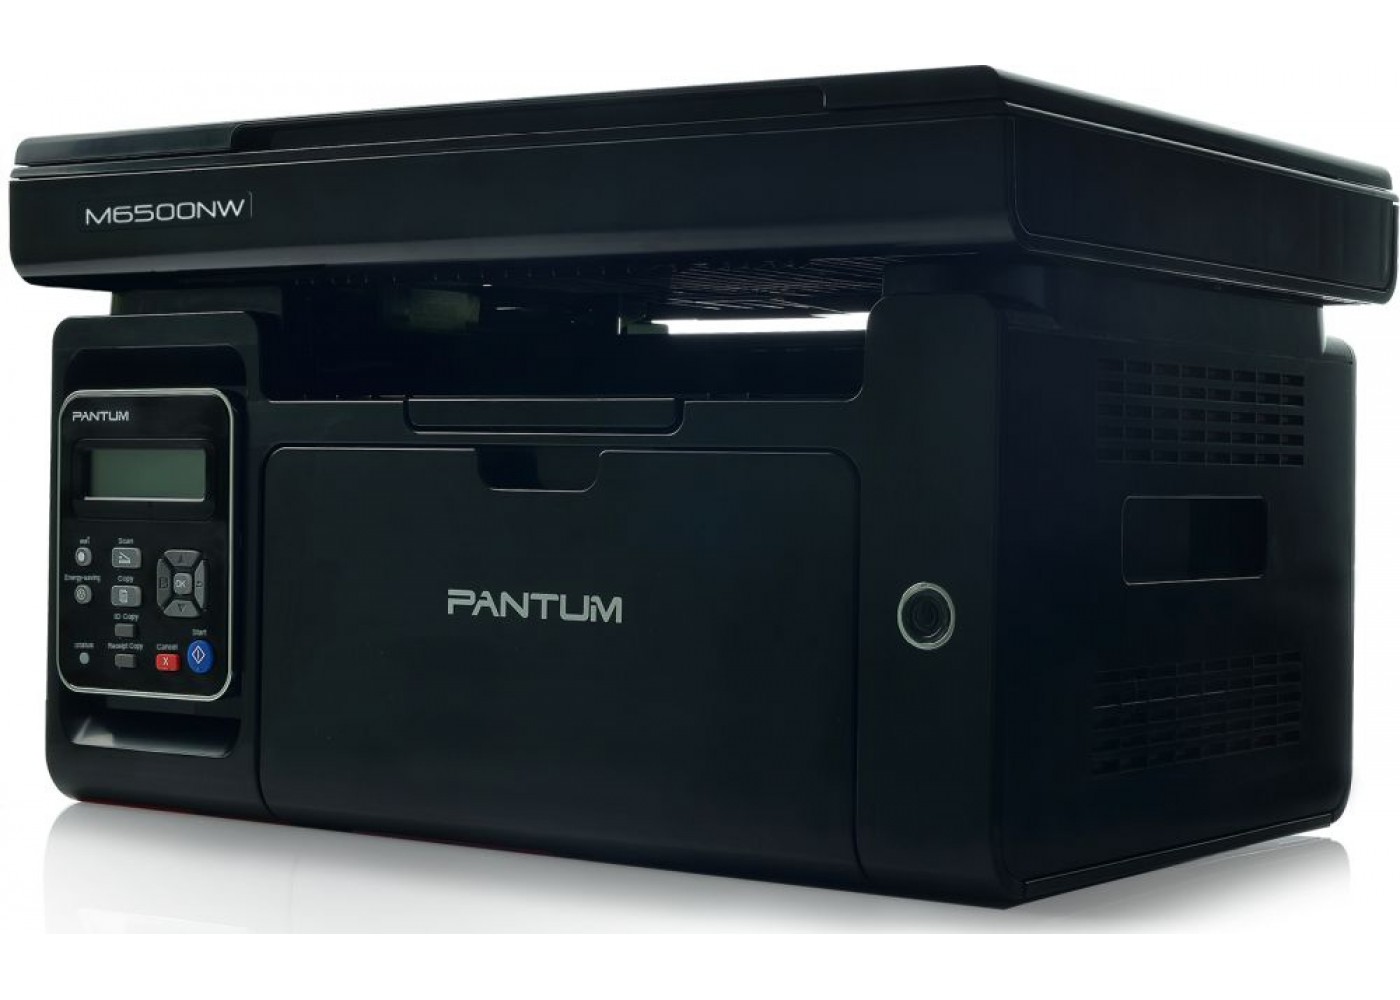 Pantum m6500 series драйвер. Pantum m6500. Лазерный принтер Pantum m6500. Принтер Pantum 6500w. Pantum m6500, a4.